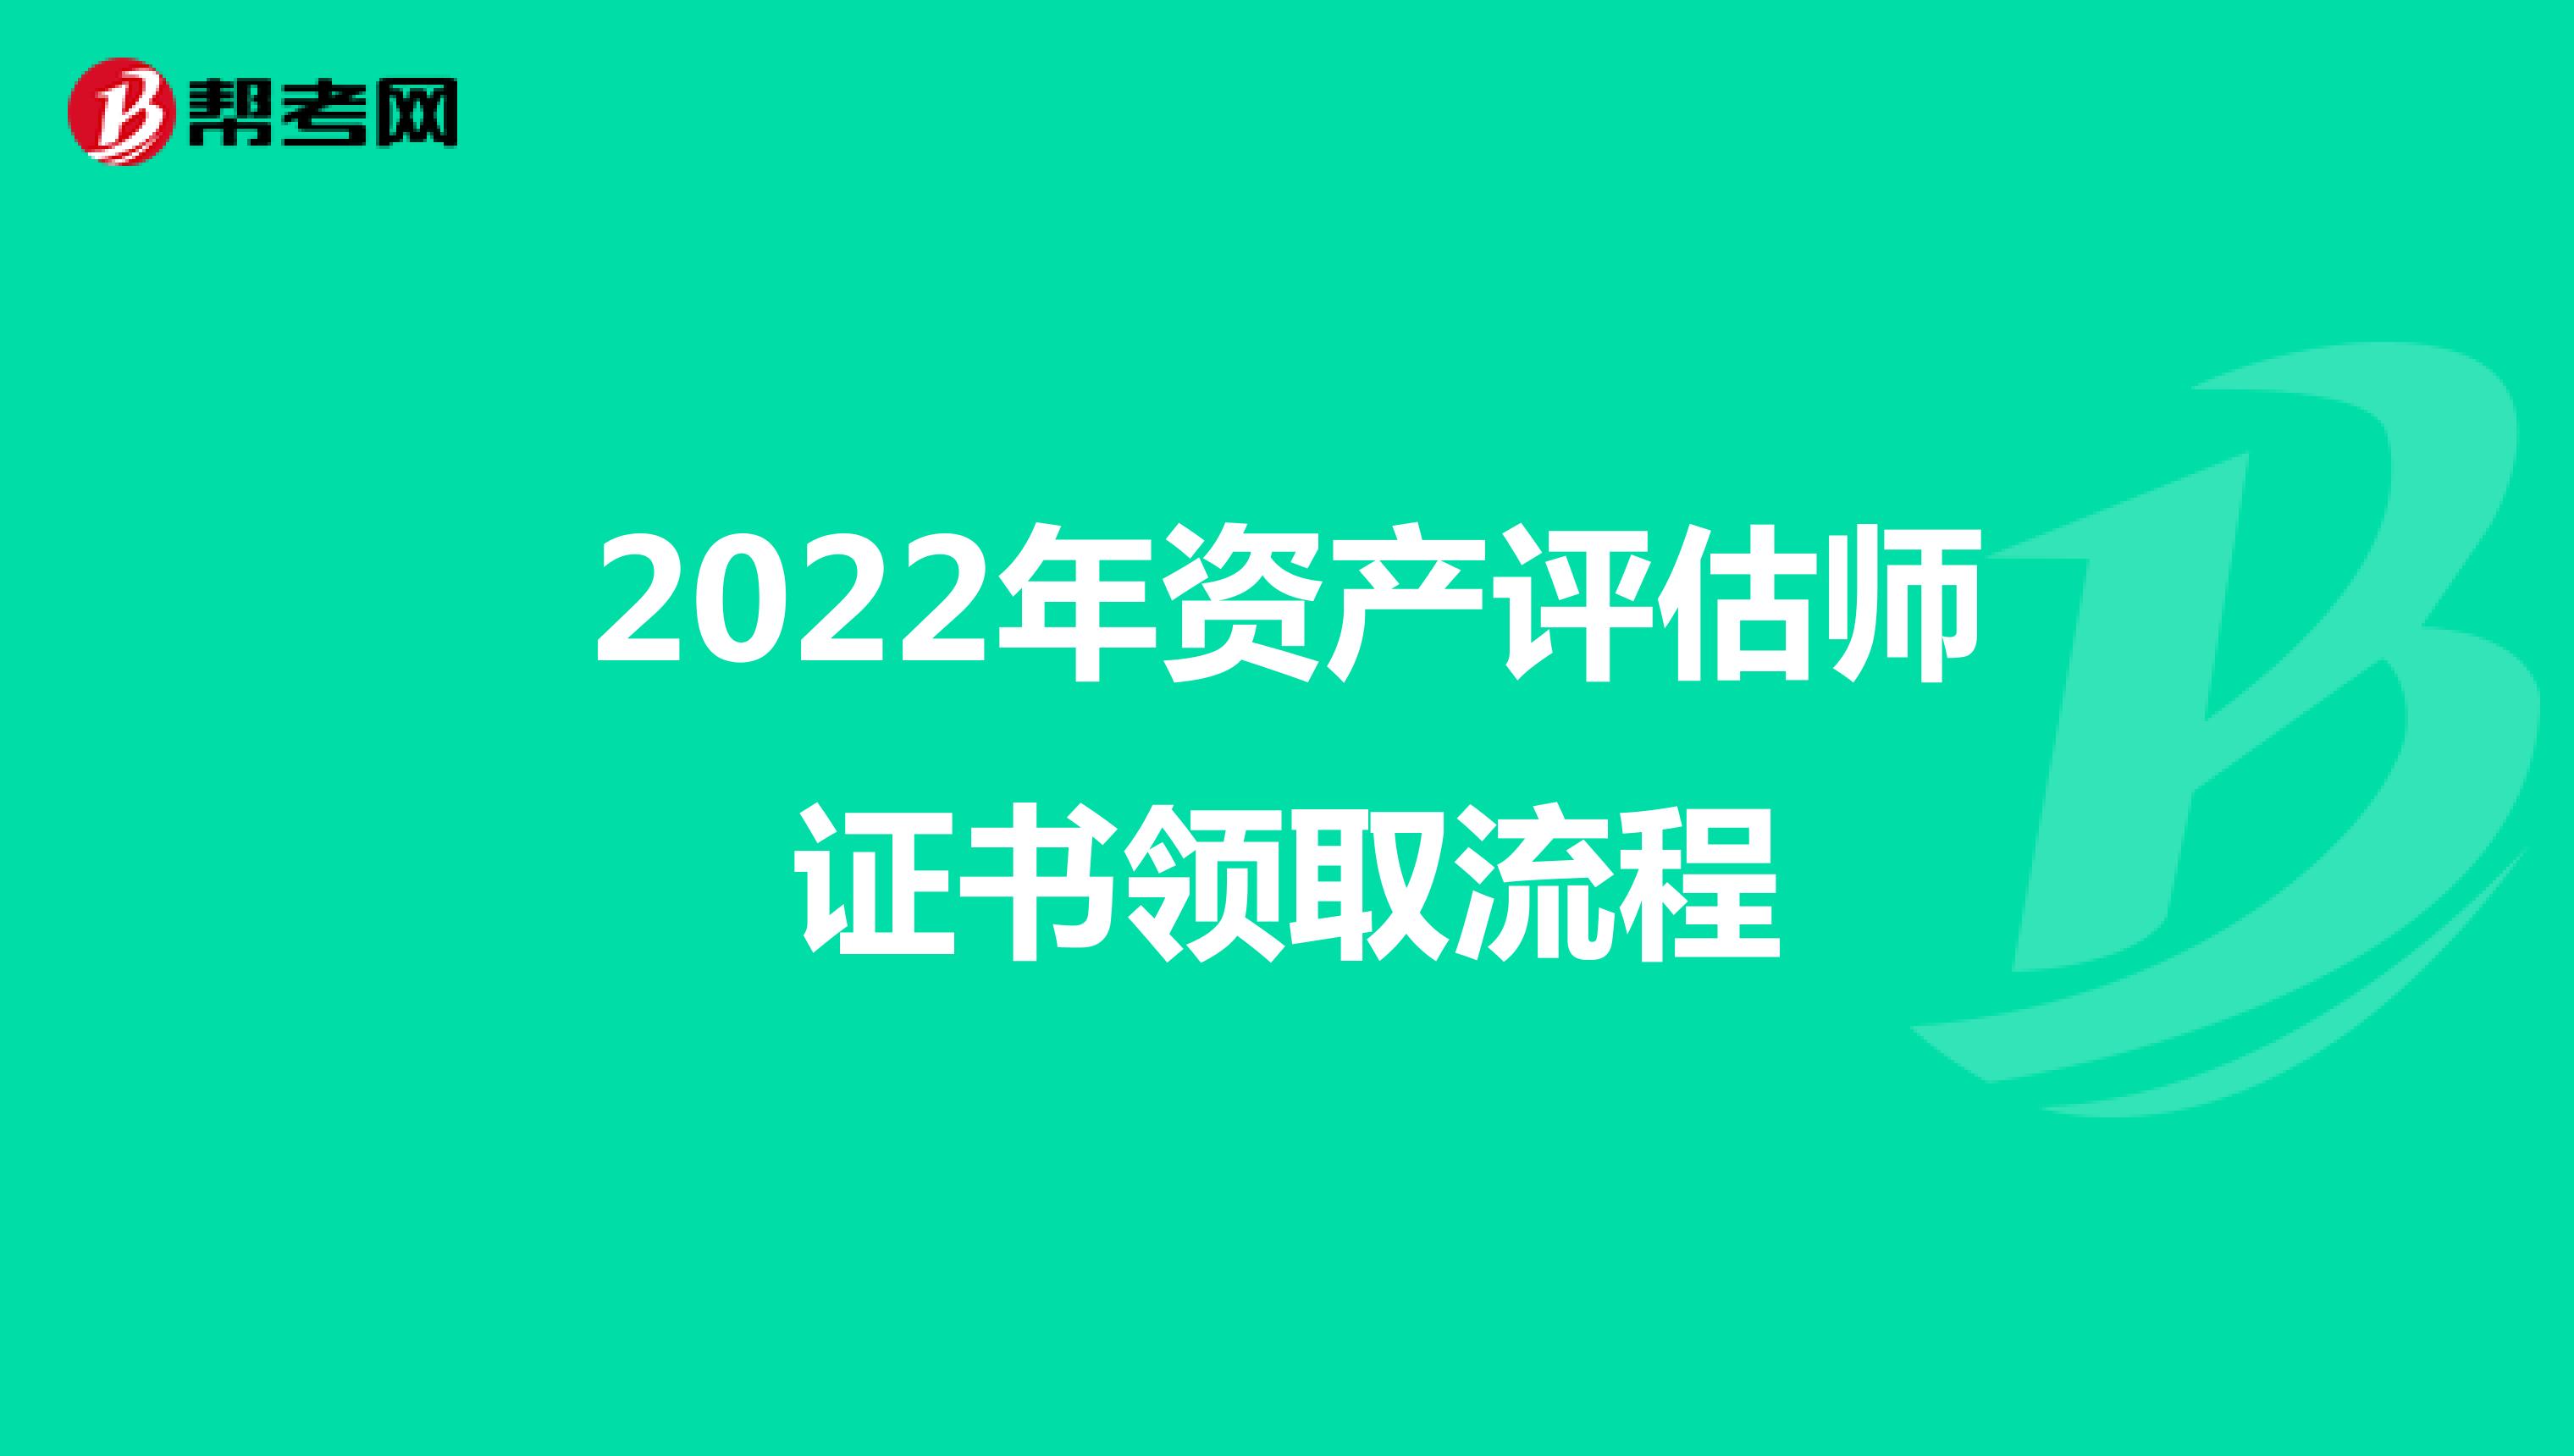 2022年资产评估师证书领取流程